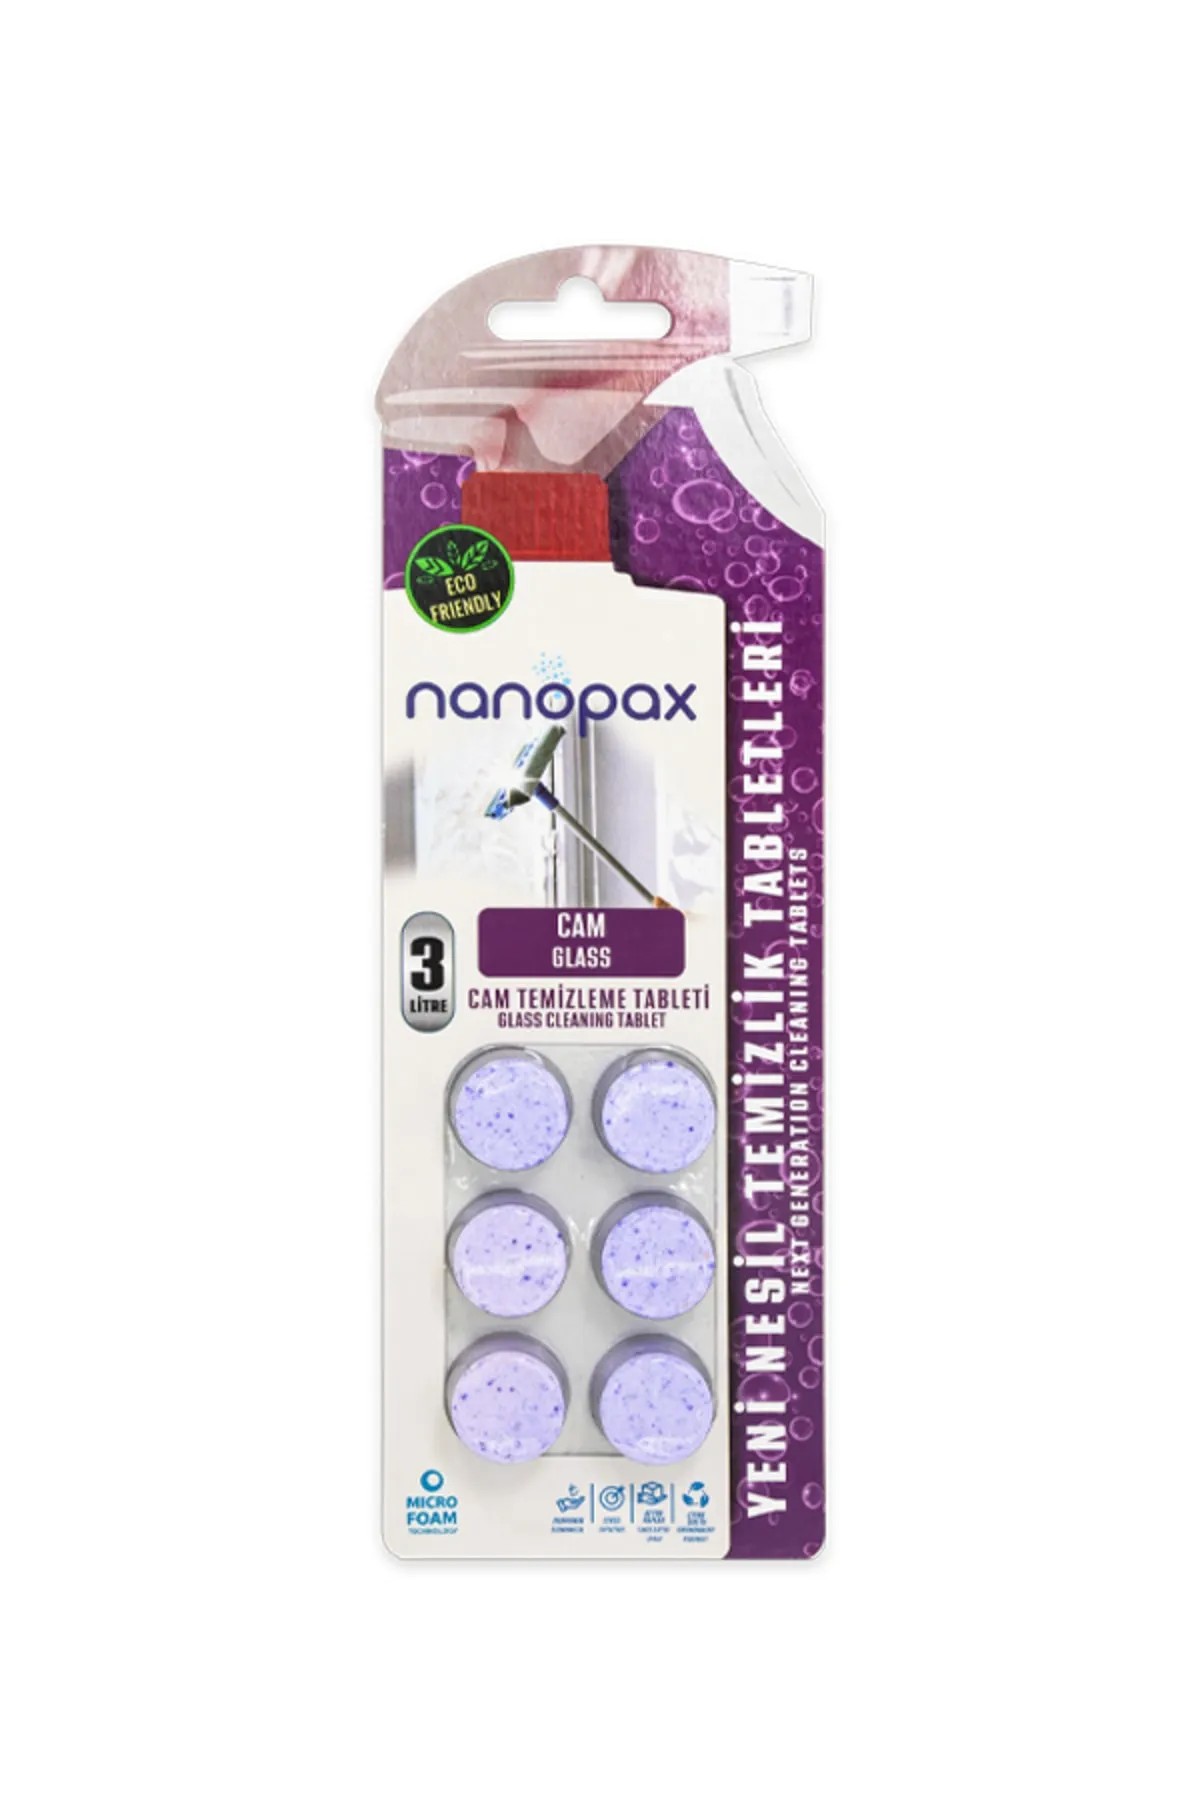 NanoPax Camsil Tableti 6 Tablet 3 L